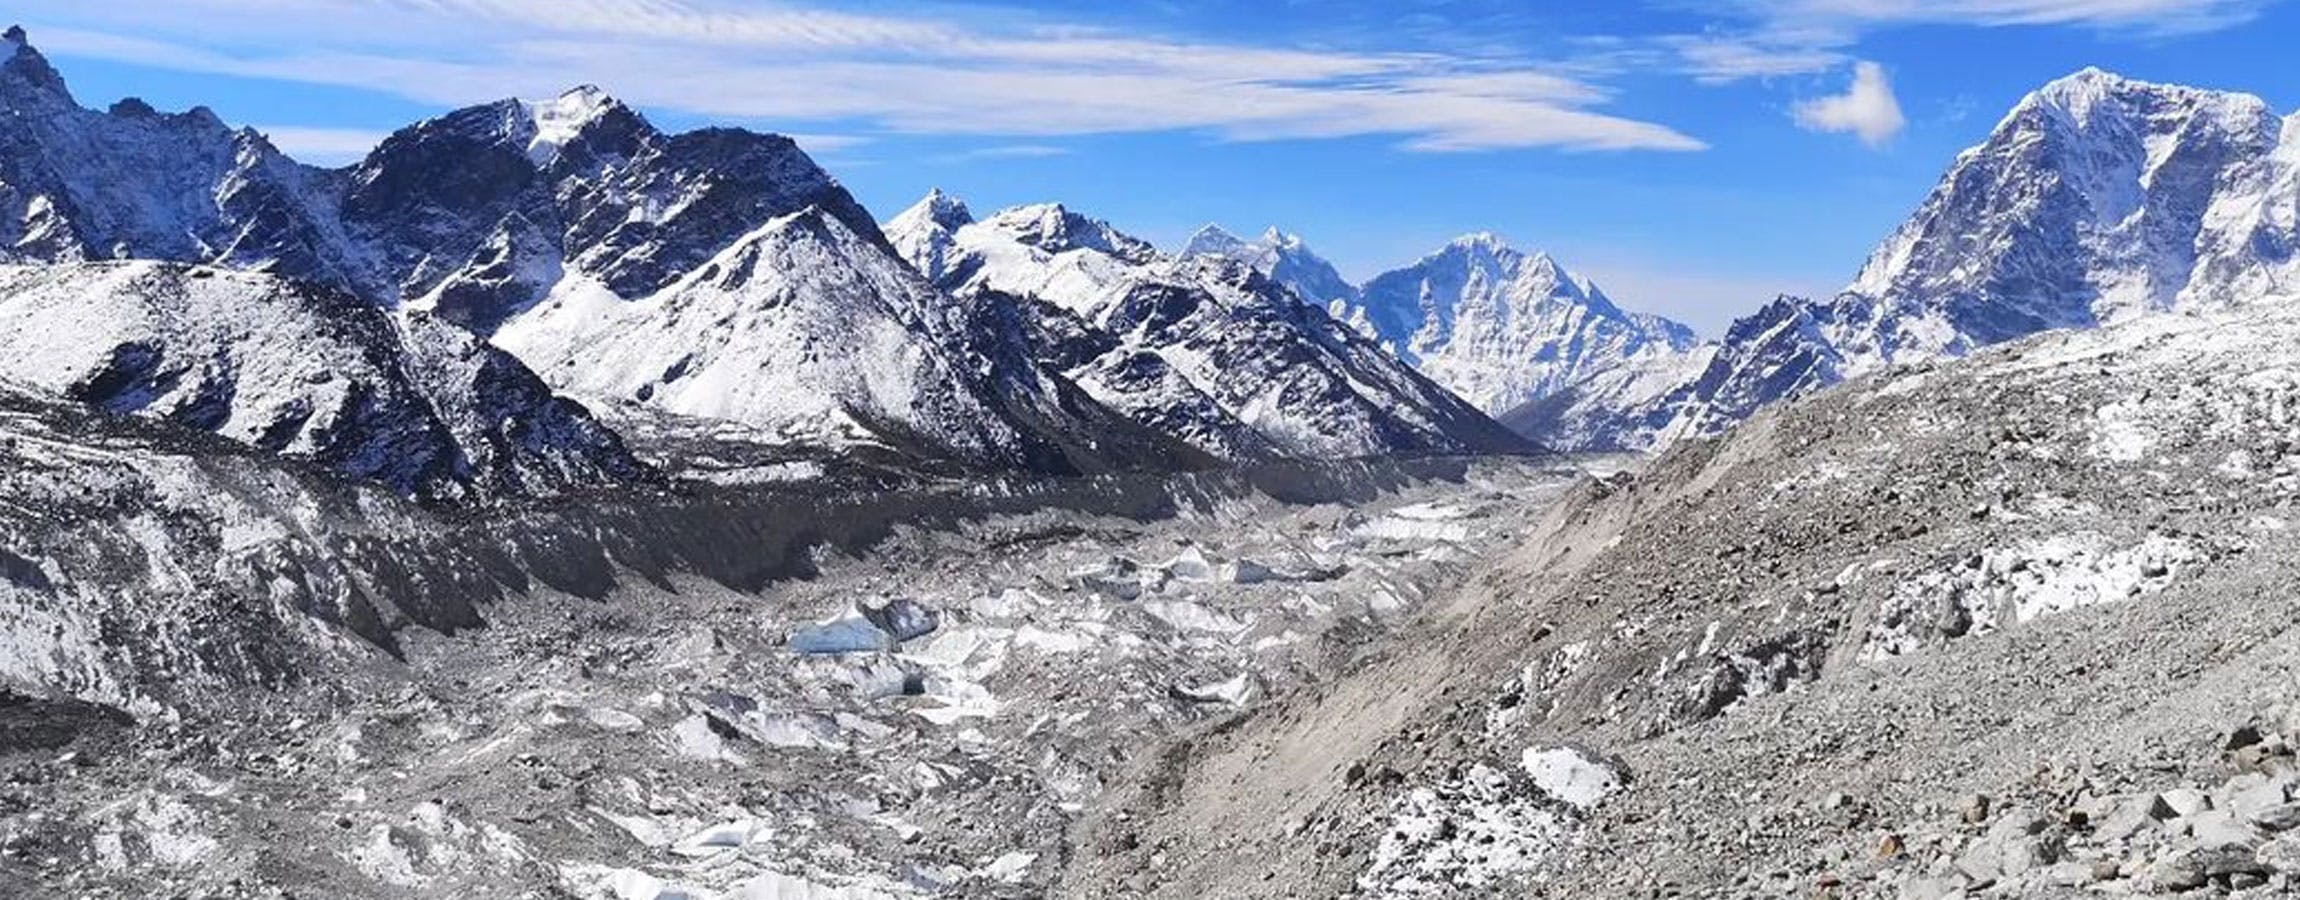 kala patthar summit panorama view